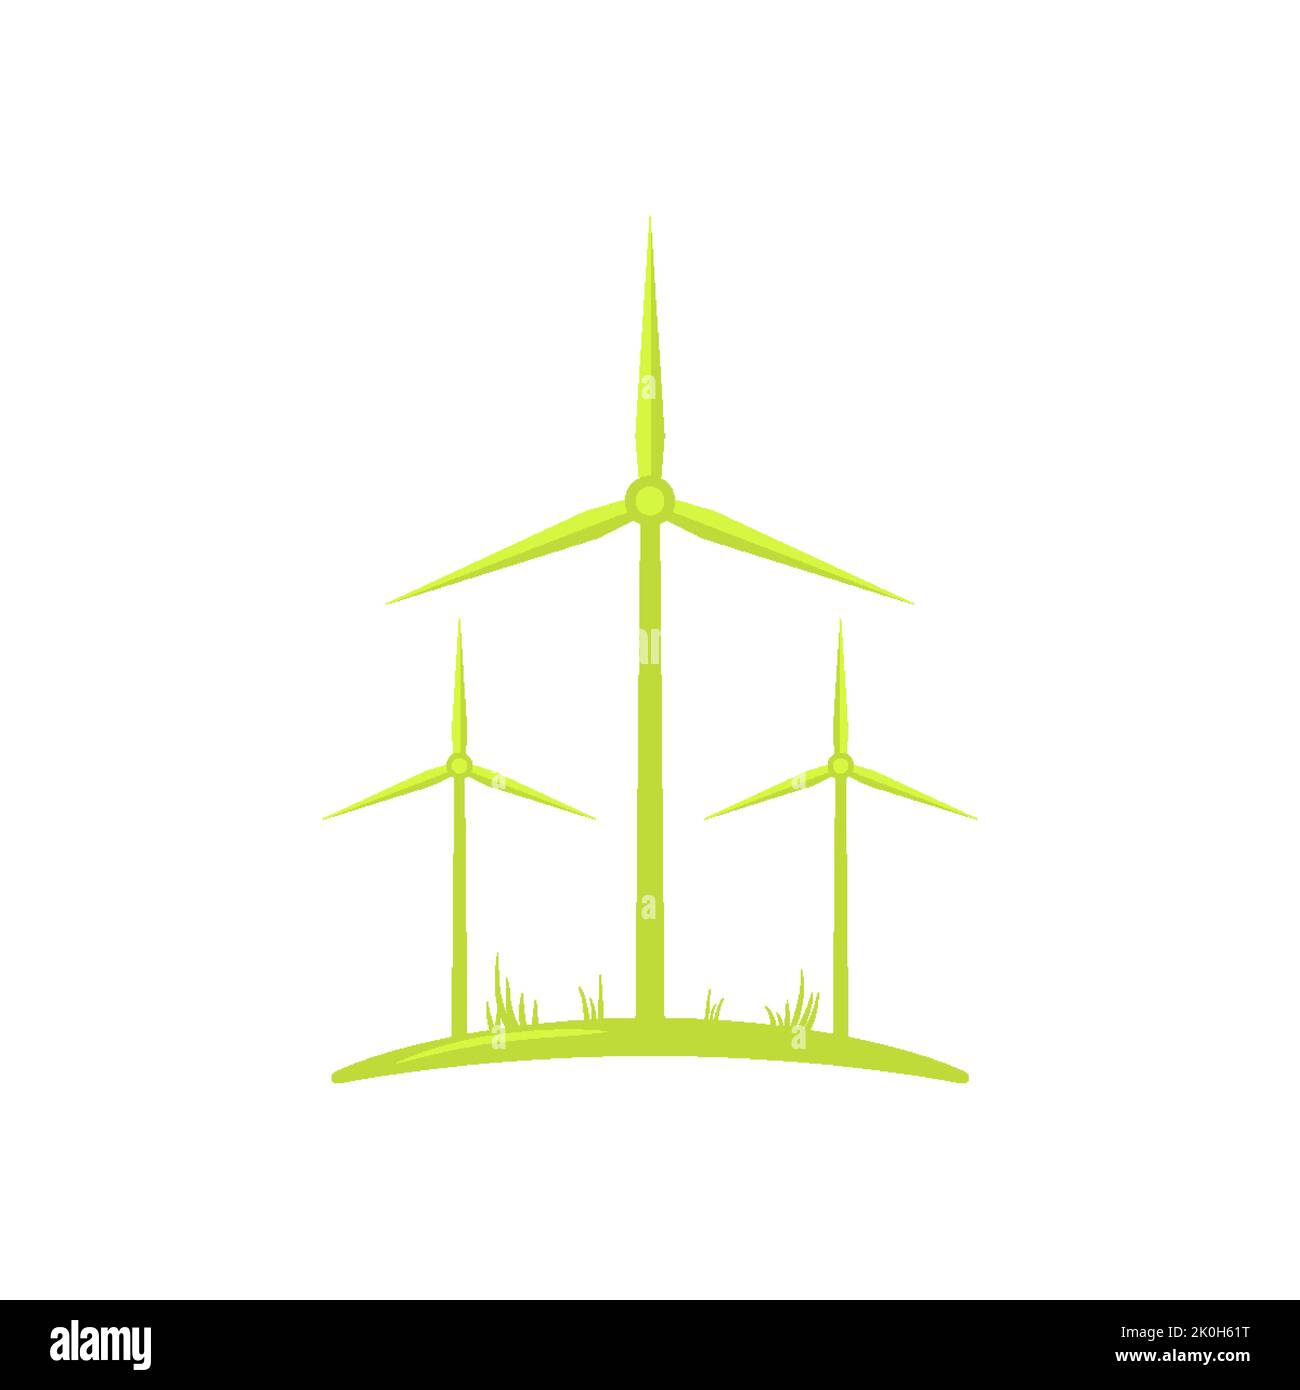 Windmühle grün Symbol Öko Recycling Bauernhof Emblem flach. Wind zu Strom Recycling sorgfältiger Verbrauch umweltfreundlicher Kraftstoff Firmenlogo Website Geschäftskonzept einfach stilvoll isoliert auf weiß Stock Vektor